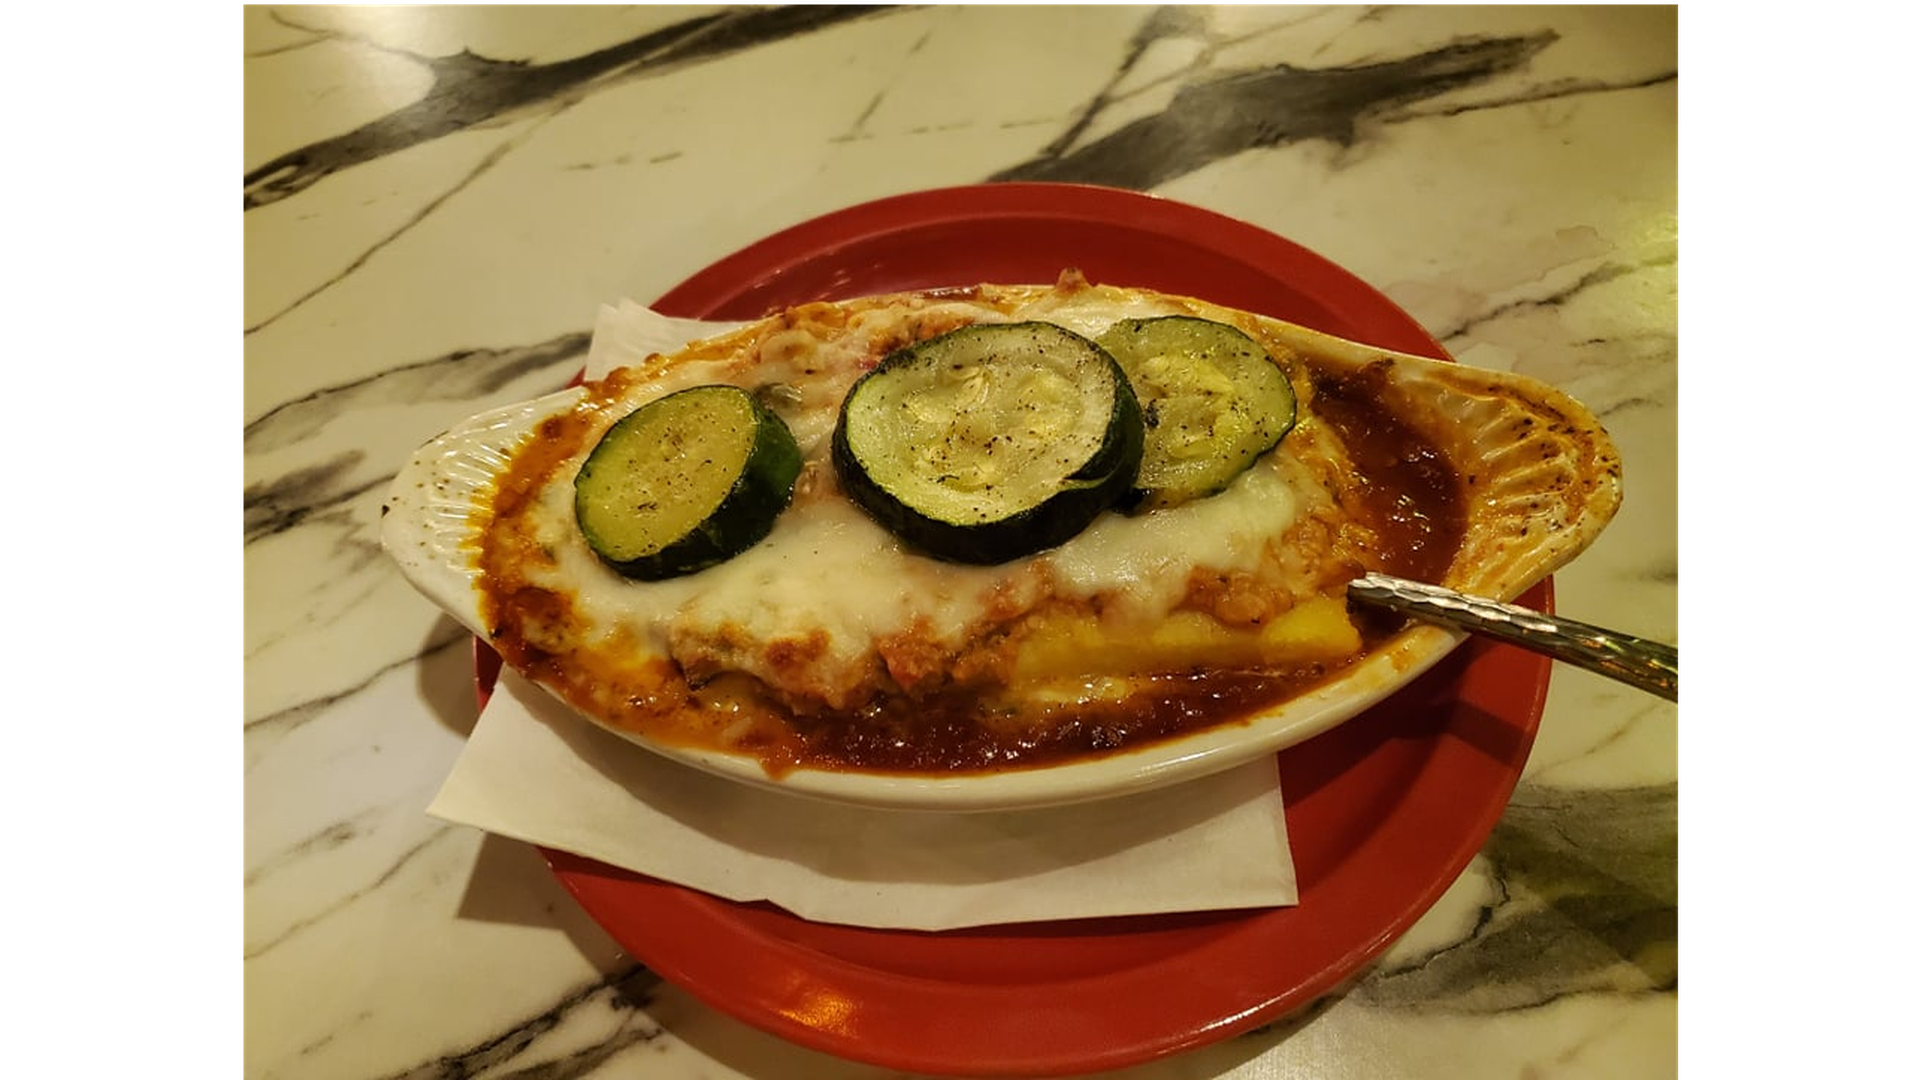 An order of polenta lasagna at Moretti's of Arlington.